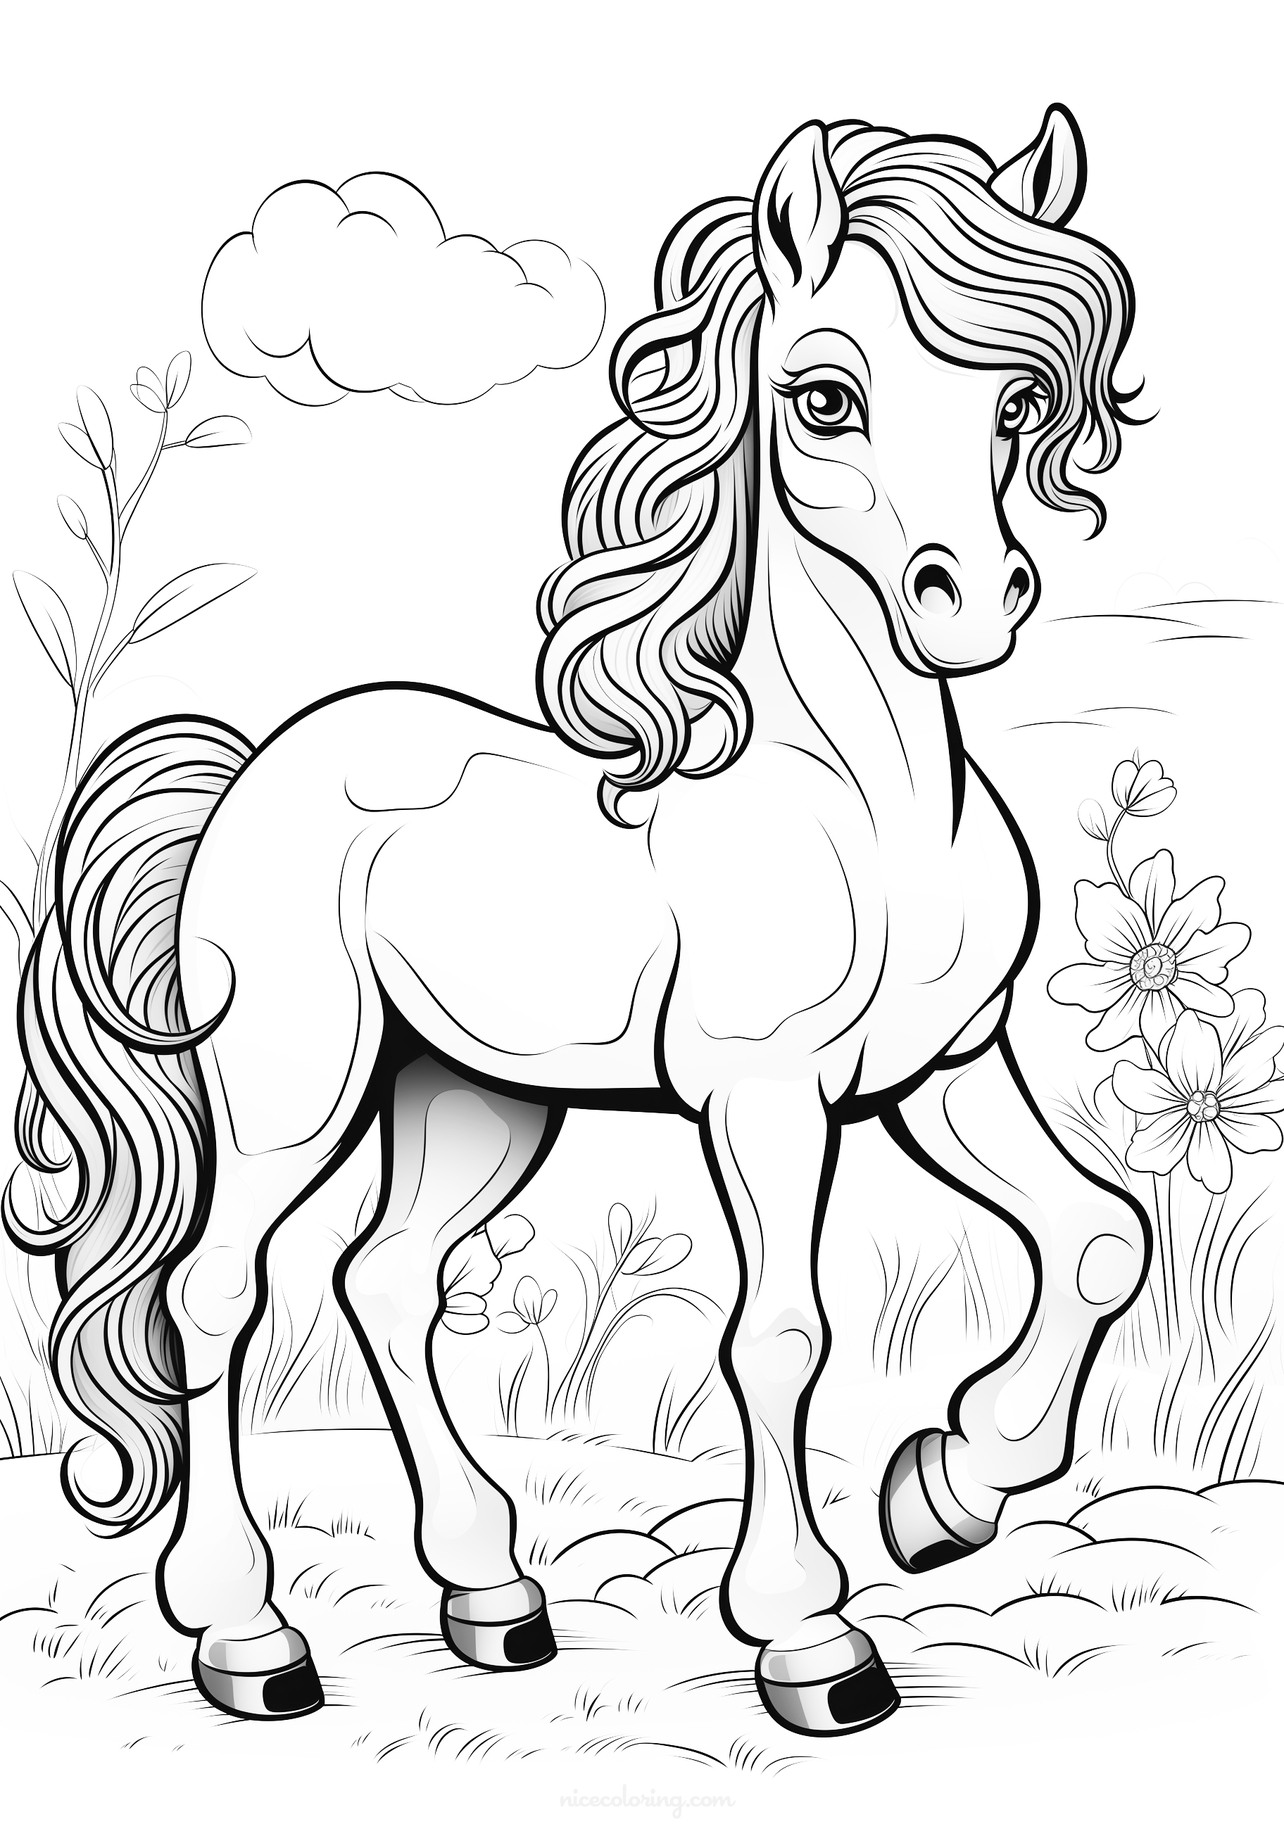 Obrazek do kolorowania przedstawiający konie galopujące na łące